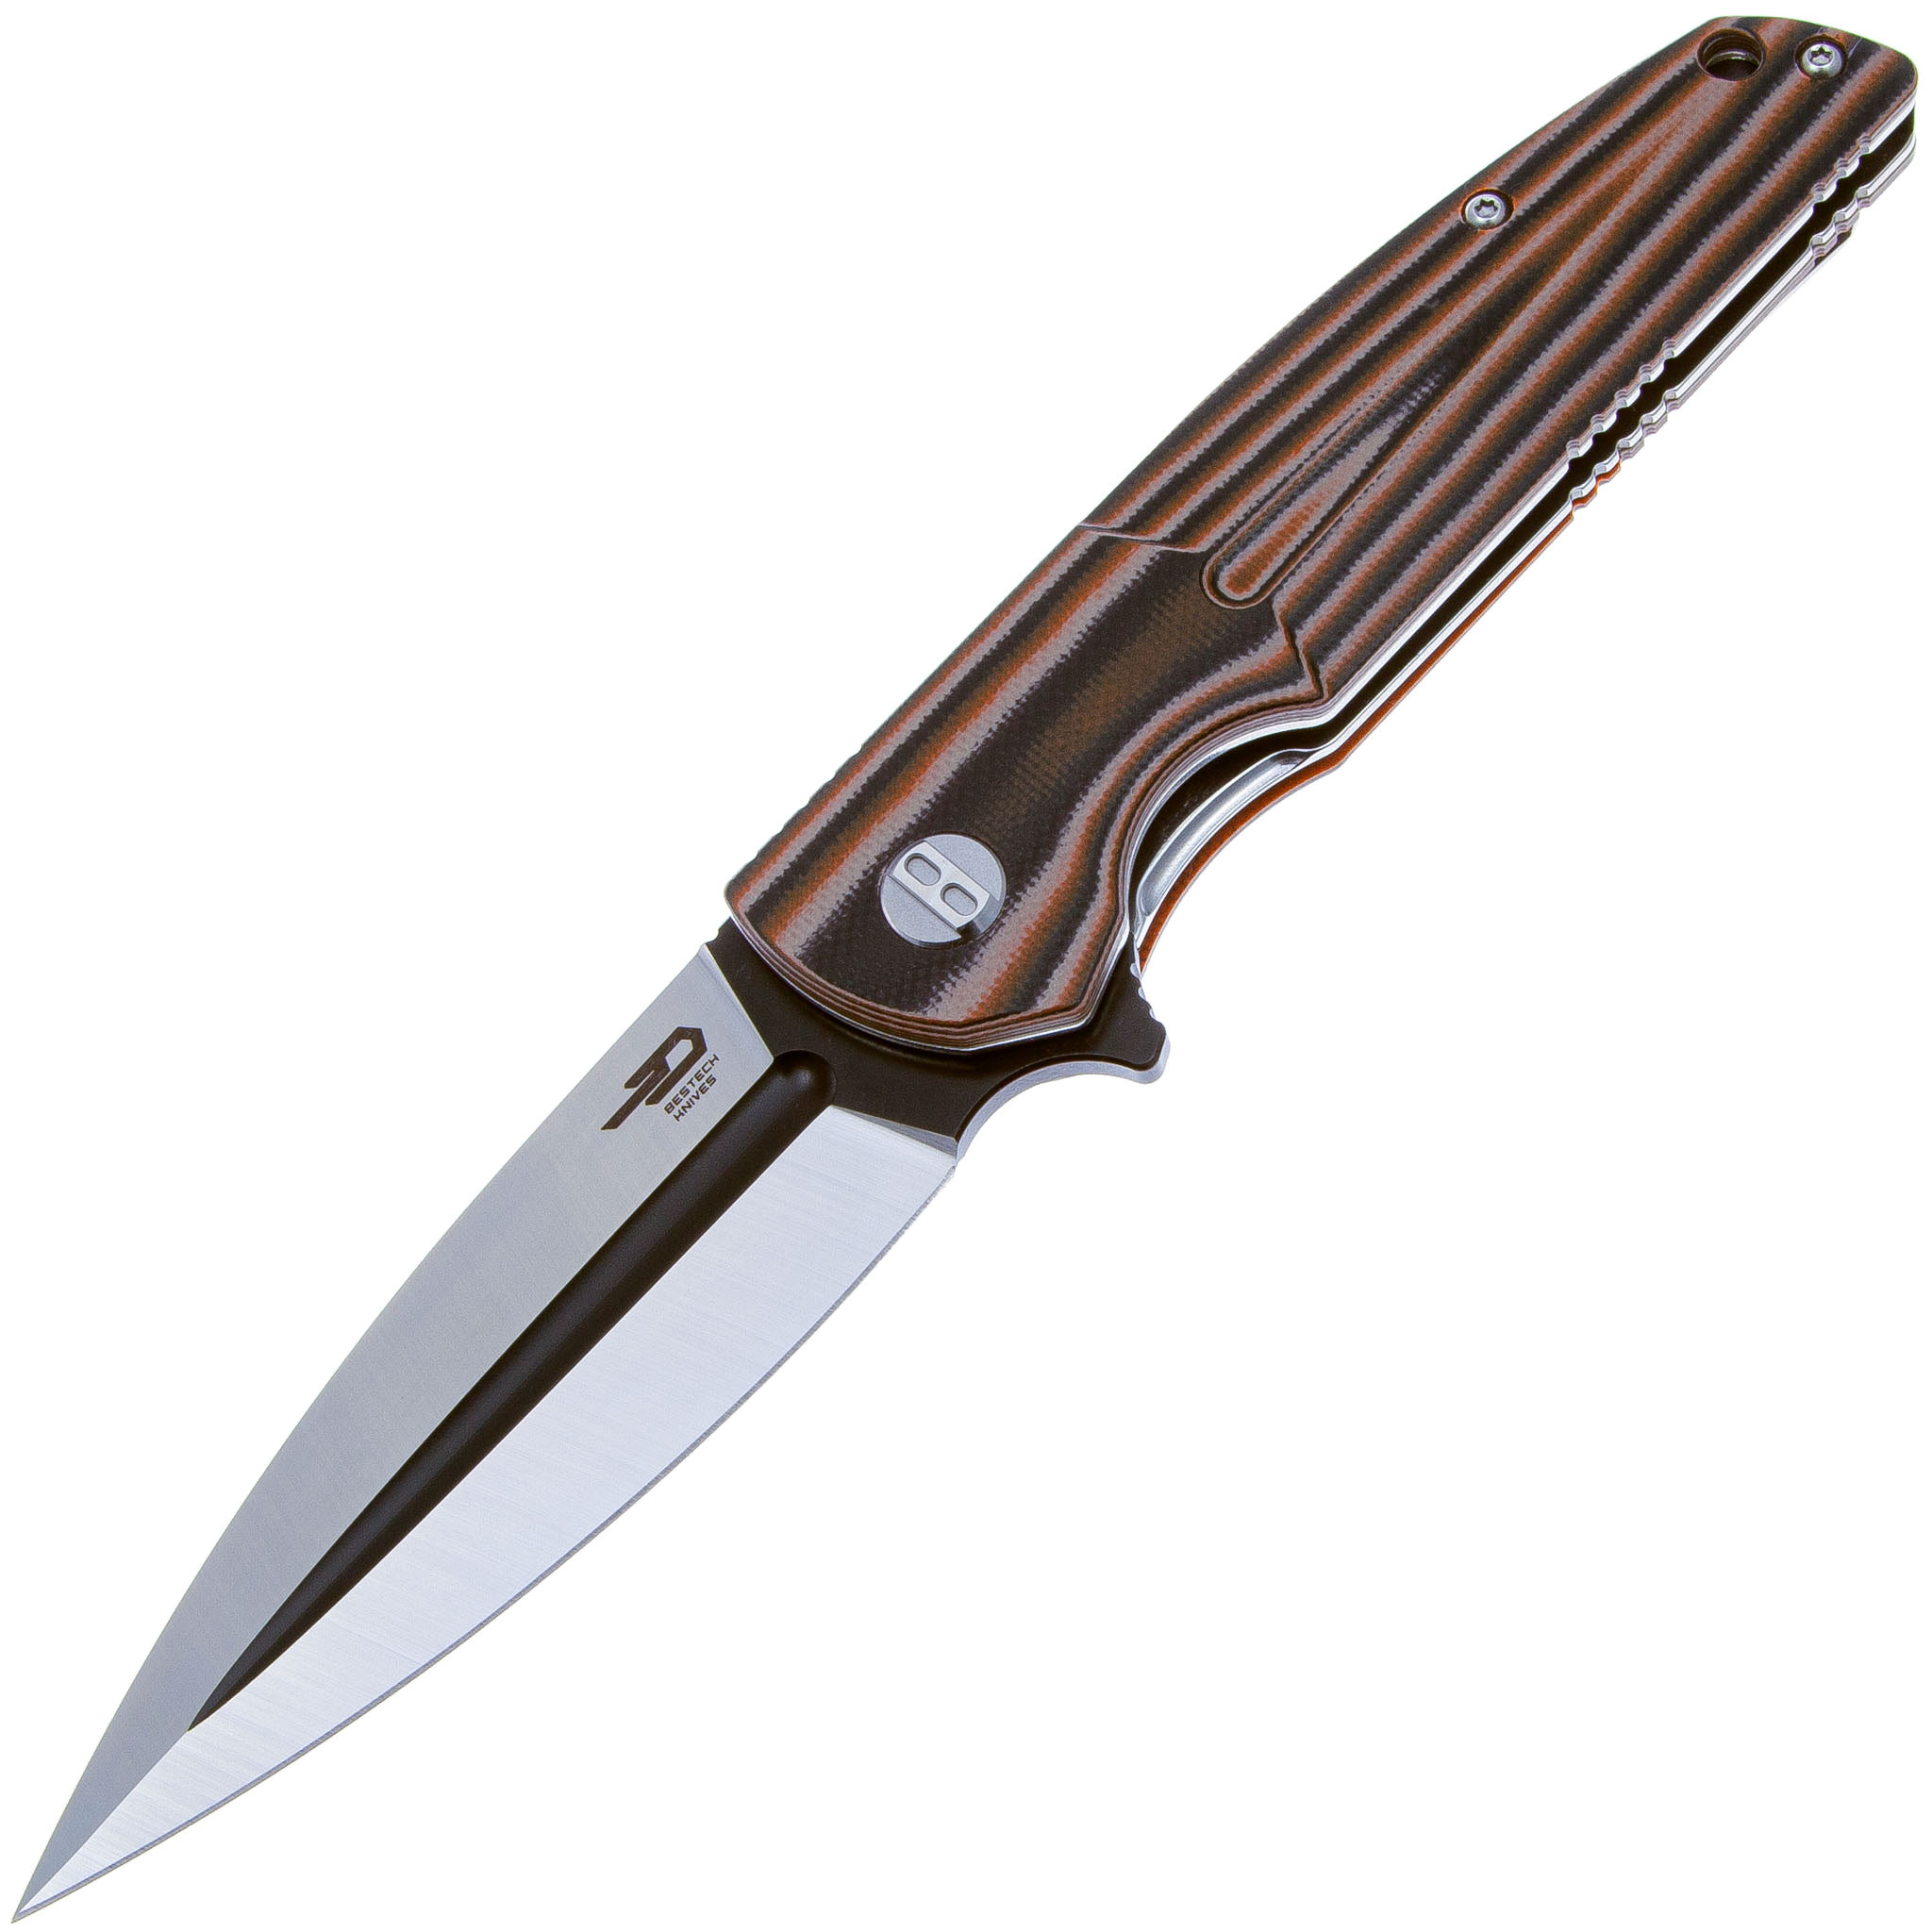 Складной нож Bestech Knives Fin, сталь Sandvik 14C28N, рукоять G10 складной нож bestech bow tie bt1906a сталь m390